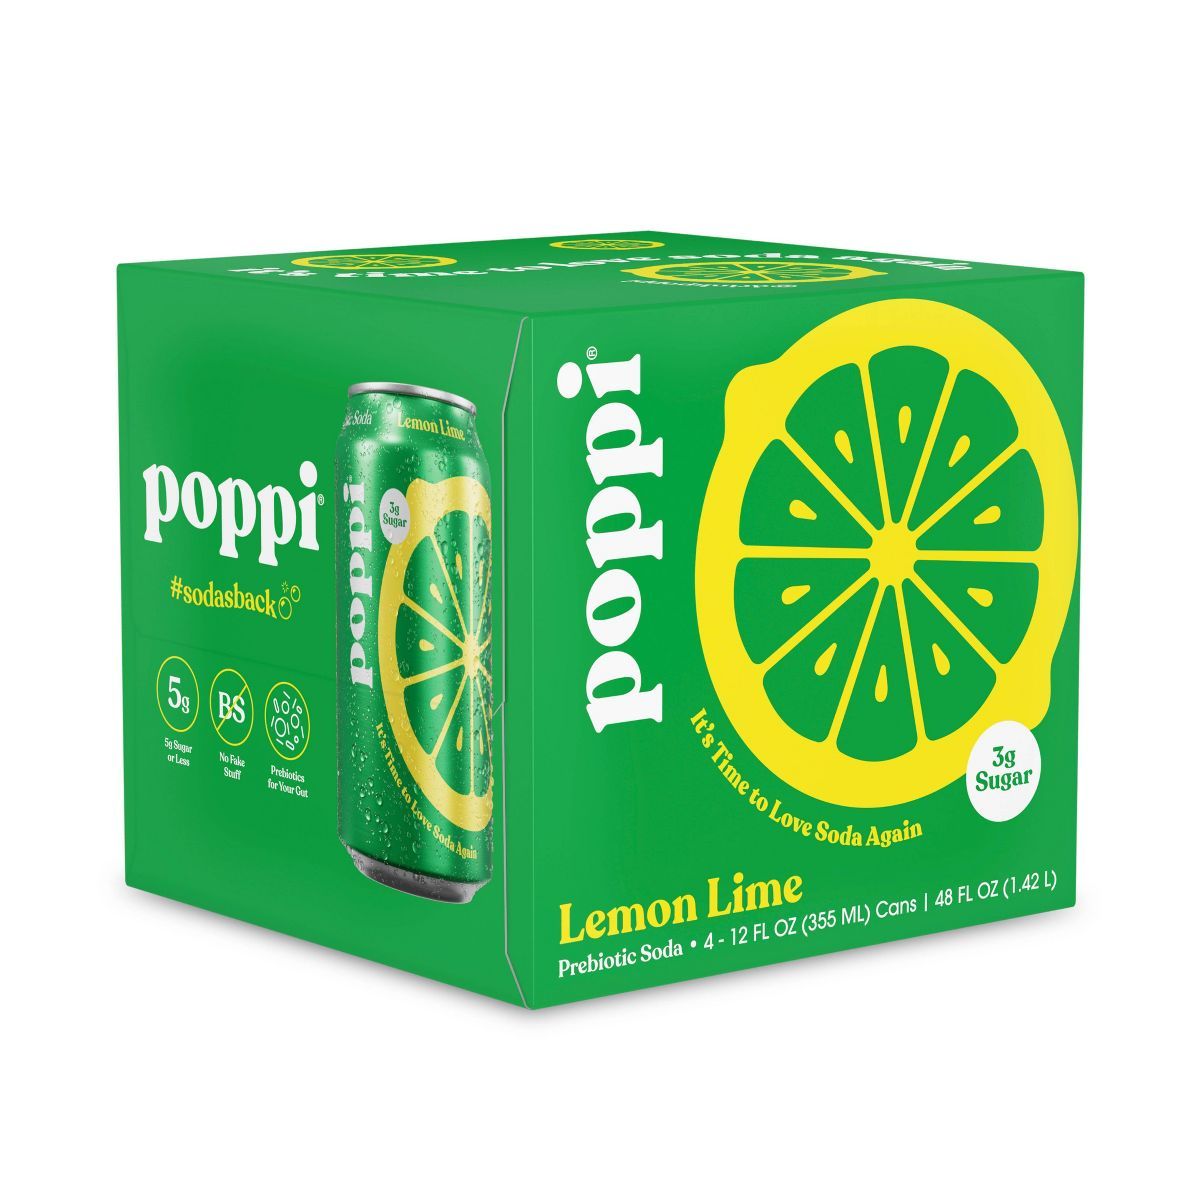 Poppi Lemon Lime Prebiotic Soda - 4pk/12 fl oz Cans | Target